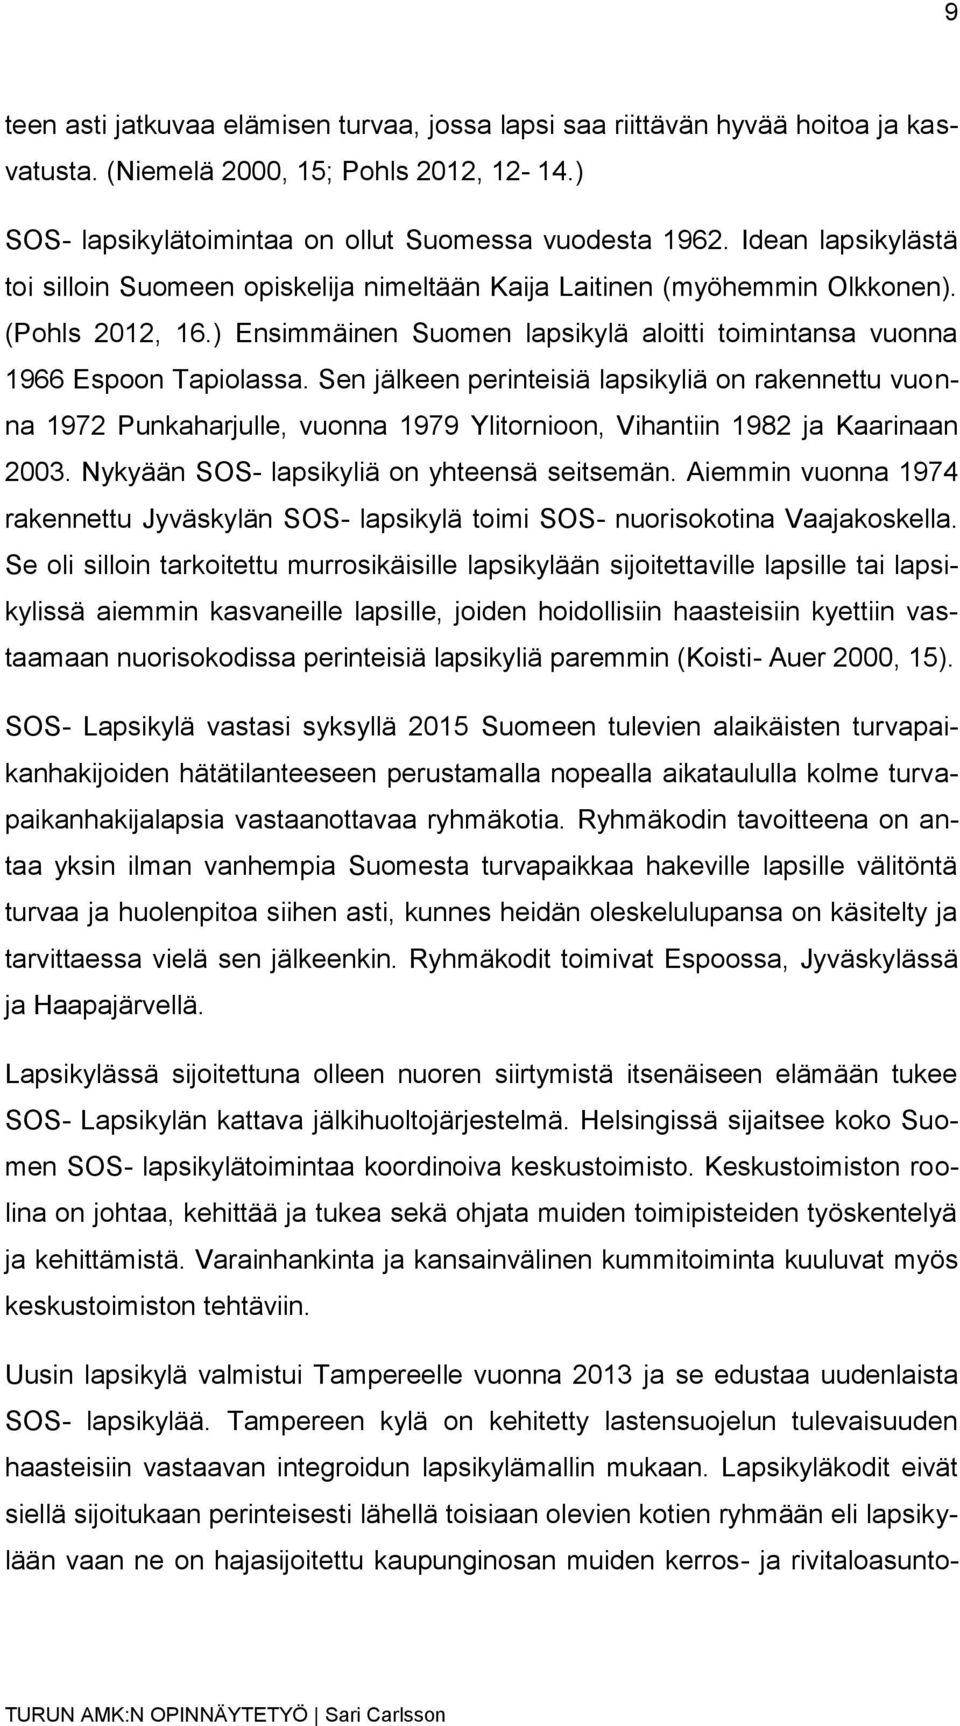 Sen jälkeen perinteisiä lapsikyliä on rakennettu vuonna 1972 Punkaharjulle, vuonna 1979 Ylitornioon, Vihantiin 1982 ja Kaarinaan 2003. Nykyään SOS- lapsikyliä on yhteensä seitsemän.